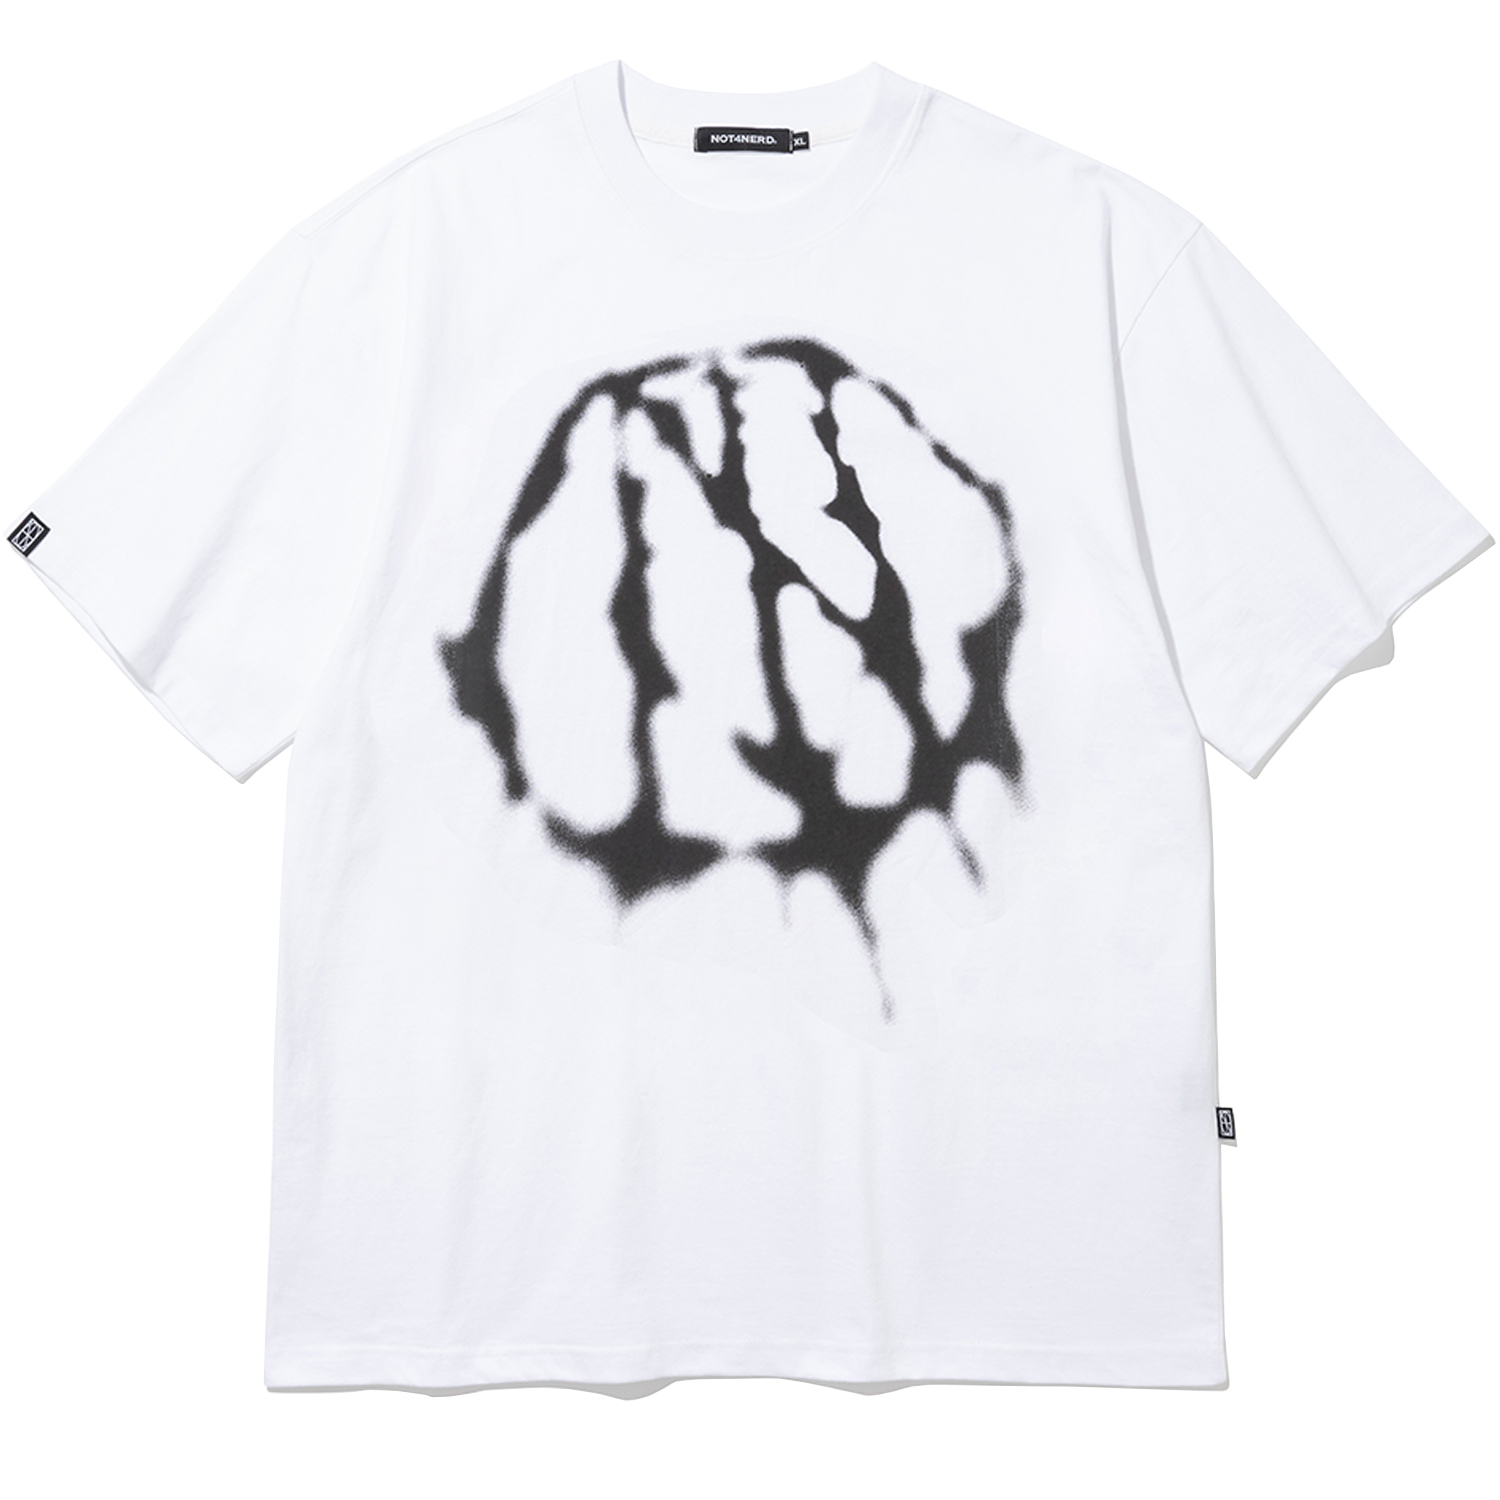 [4월 19일 예약배송] Ink Bleed T-Shirts - White,NOT4NERD